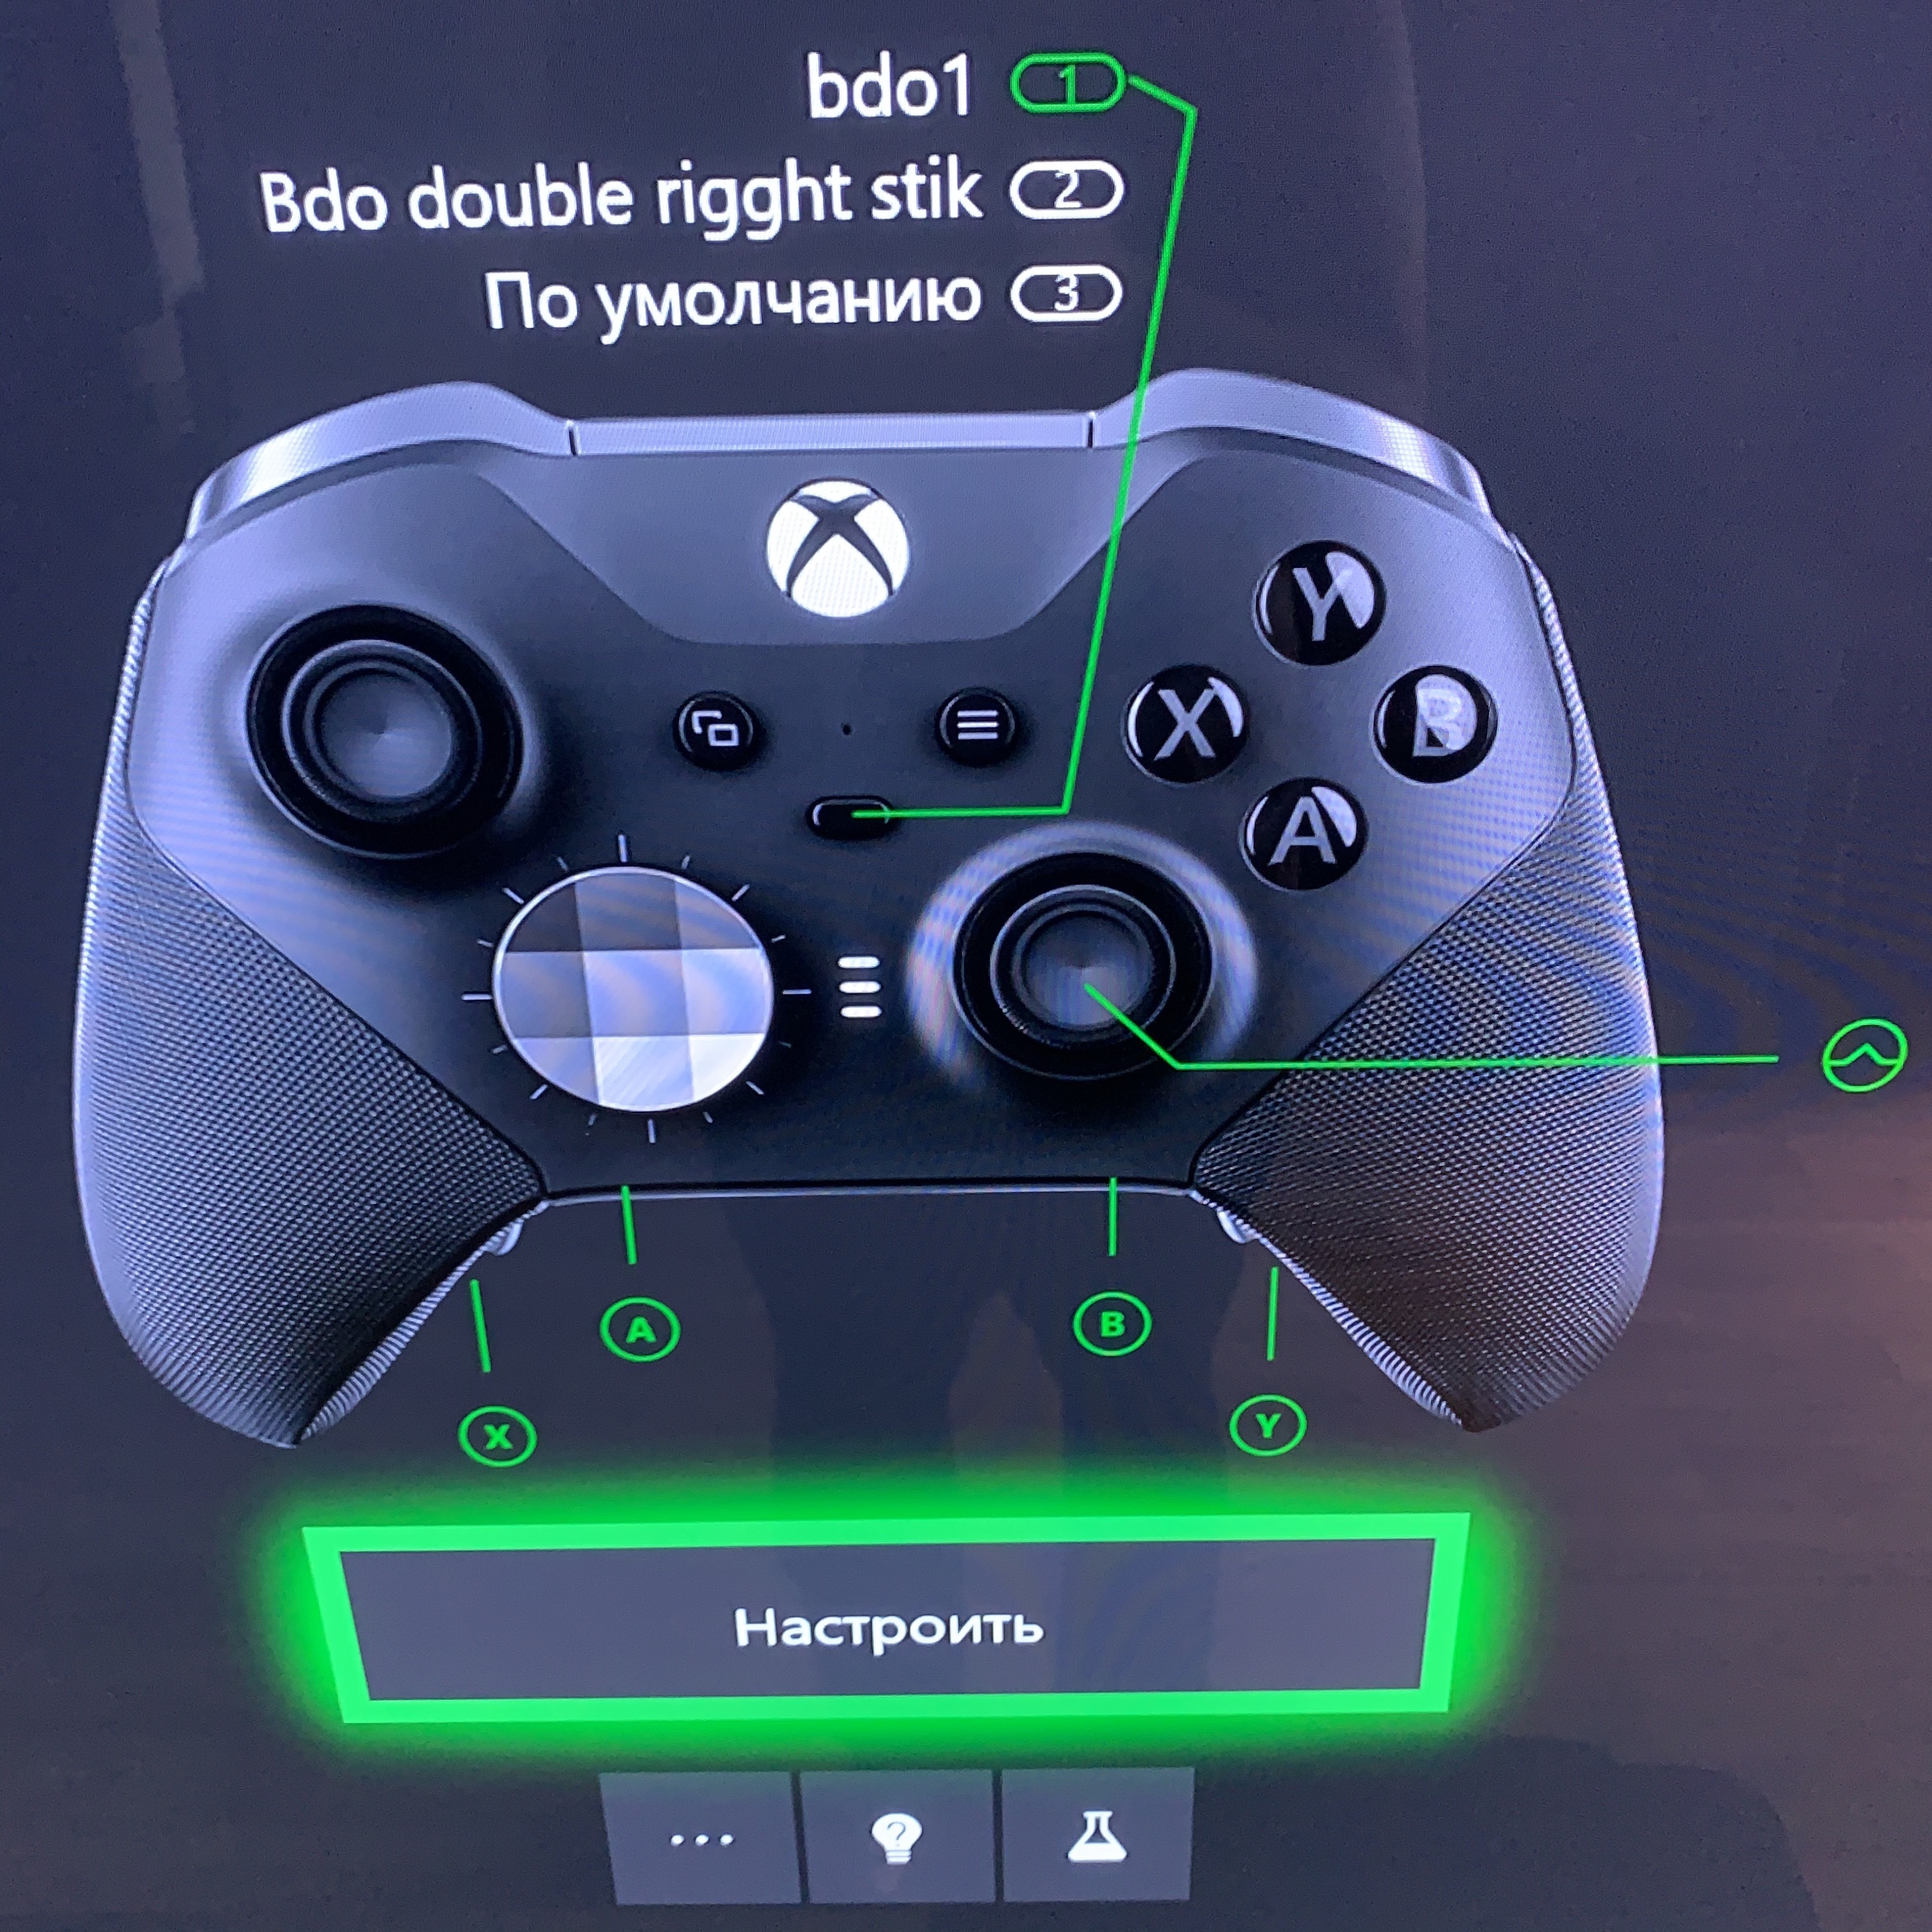 Как подключить игровой джойстик. X360ce Dualshock 4. Xbox 360 подключить джойстик от ps4. Геймпад Xbox 360 и ps3. Как подключить джойстик Xbox 360.